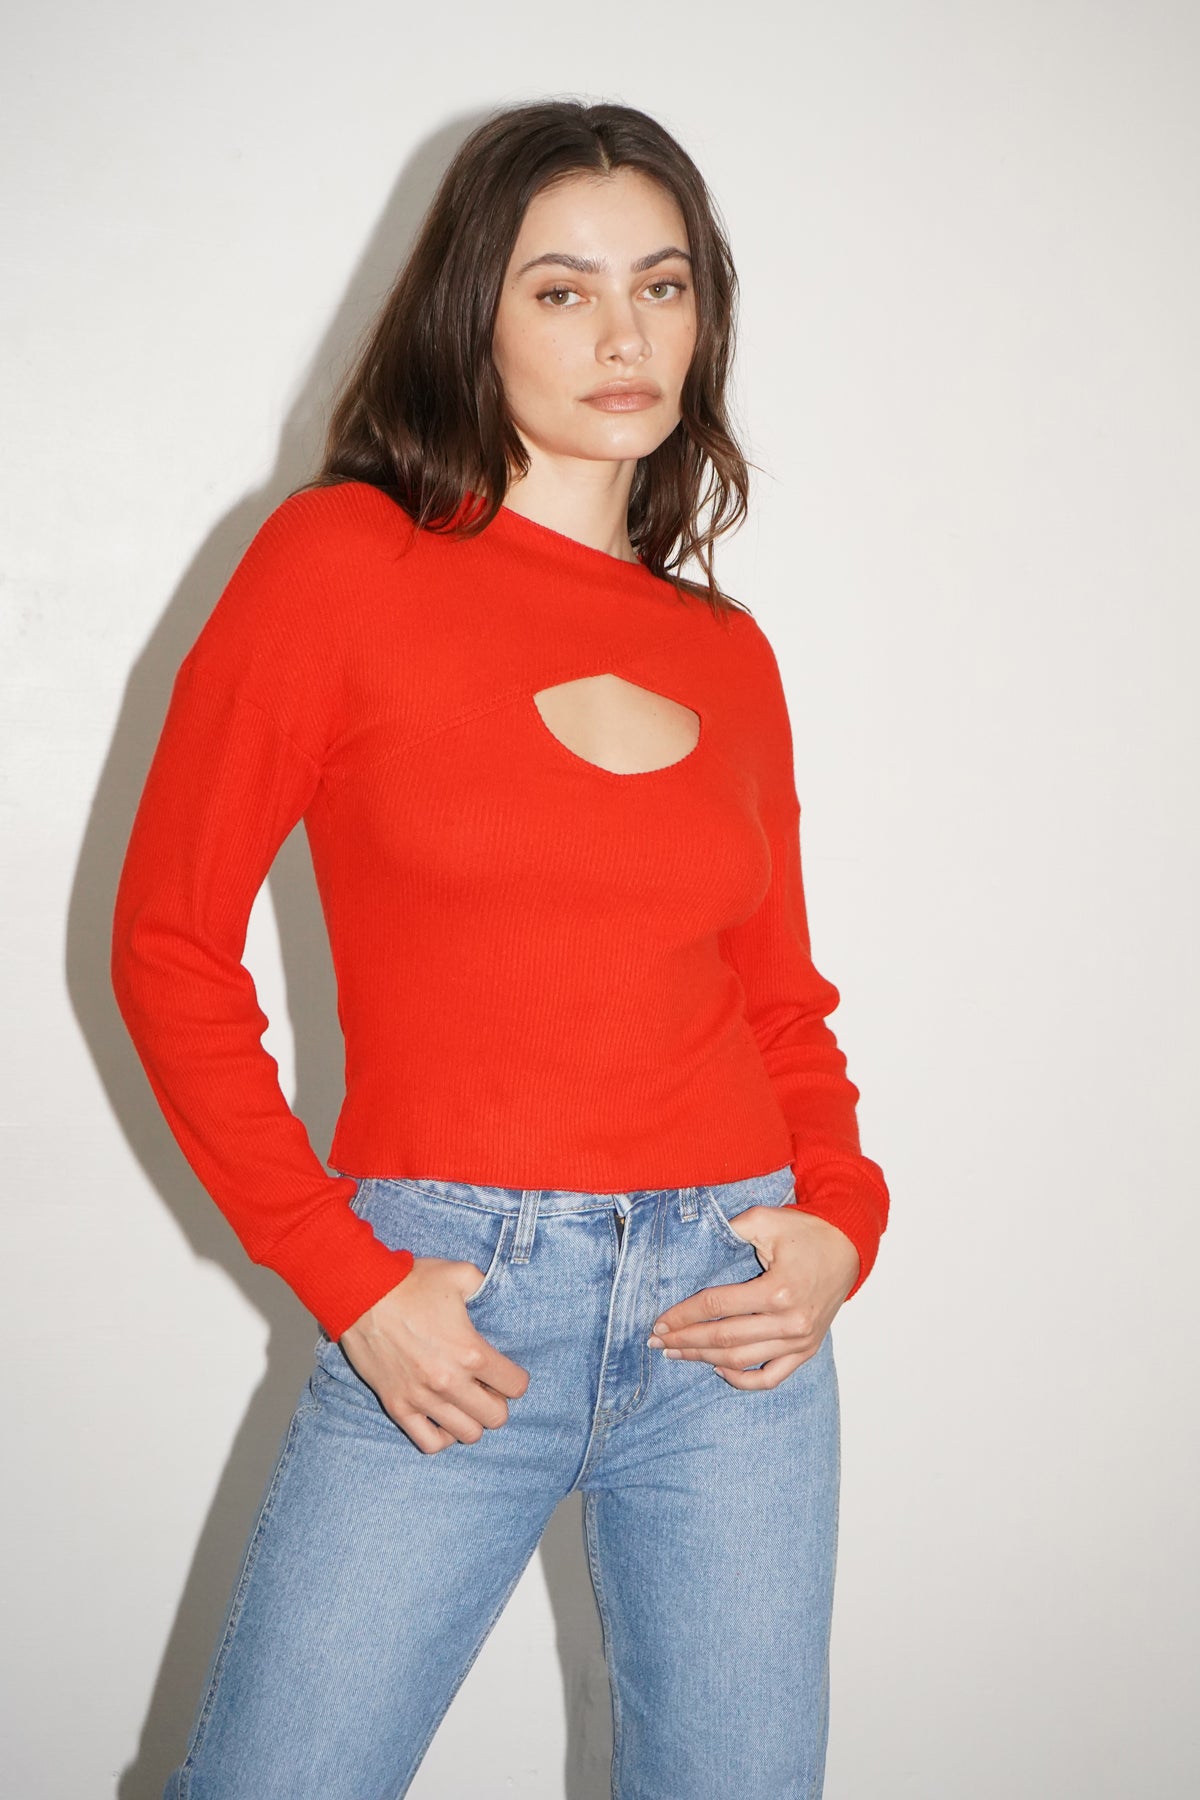 LNA Cori Sweater Rib Top in Tomato 